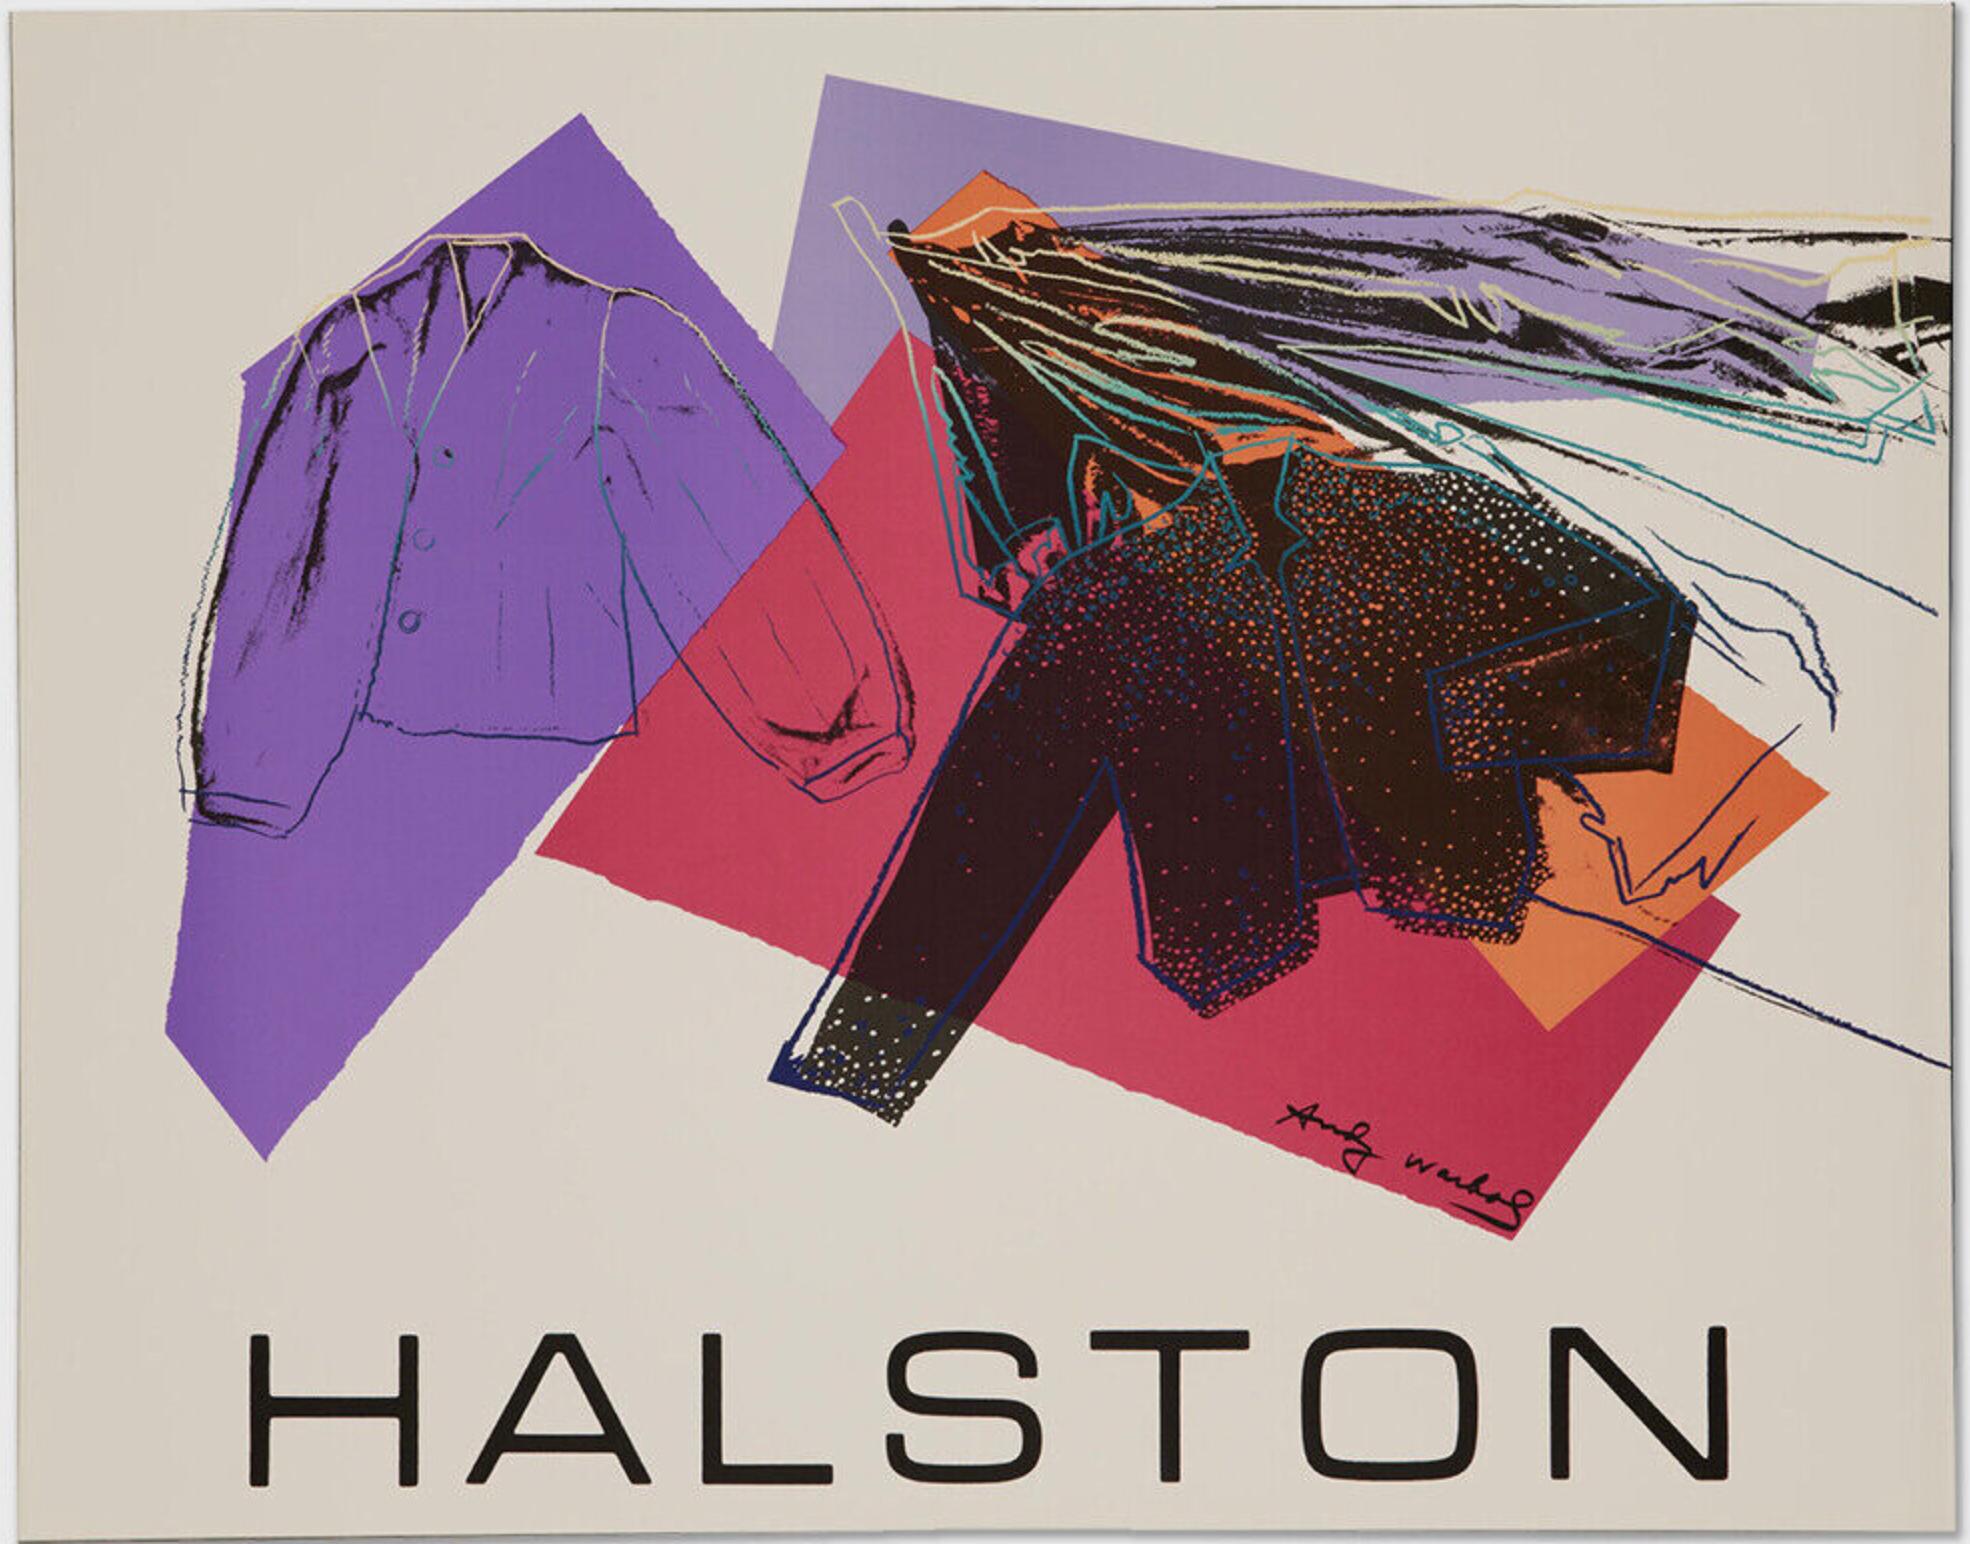 Andy Warhol – Halston Women's Wear, Werbeplakat für Werbekampagne